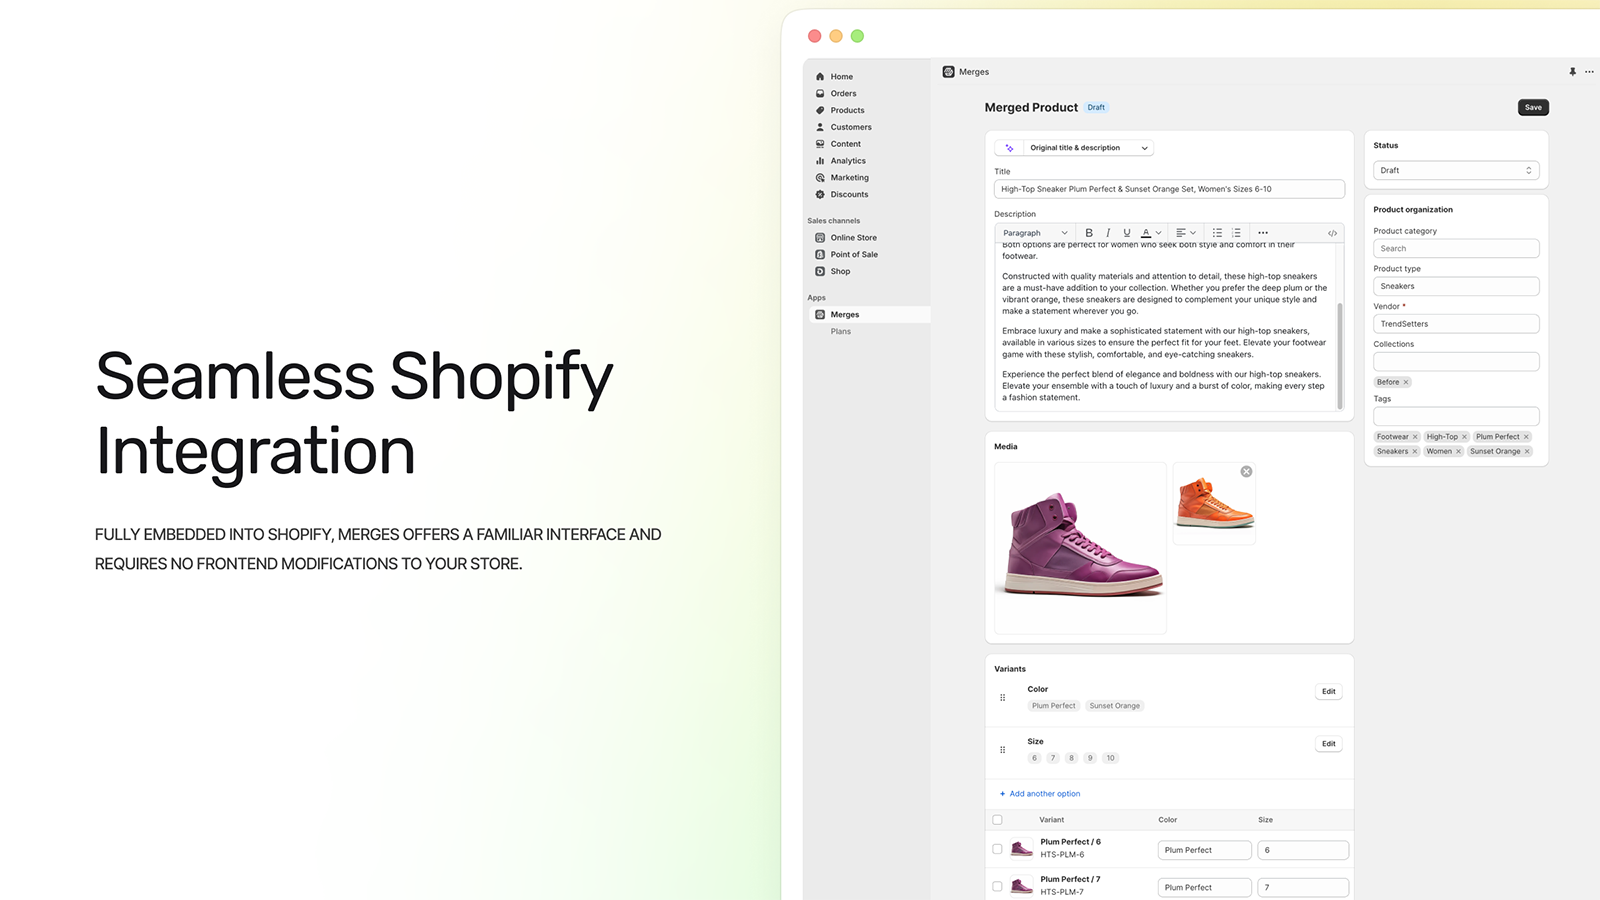 Aplicación completamente integrada en la experiencia de Shopify